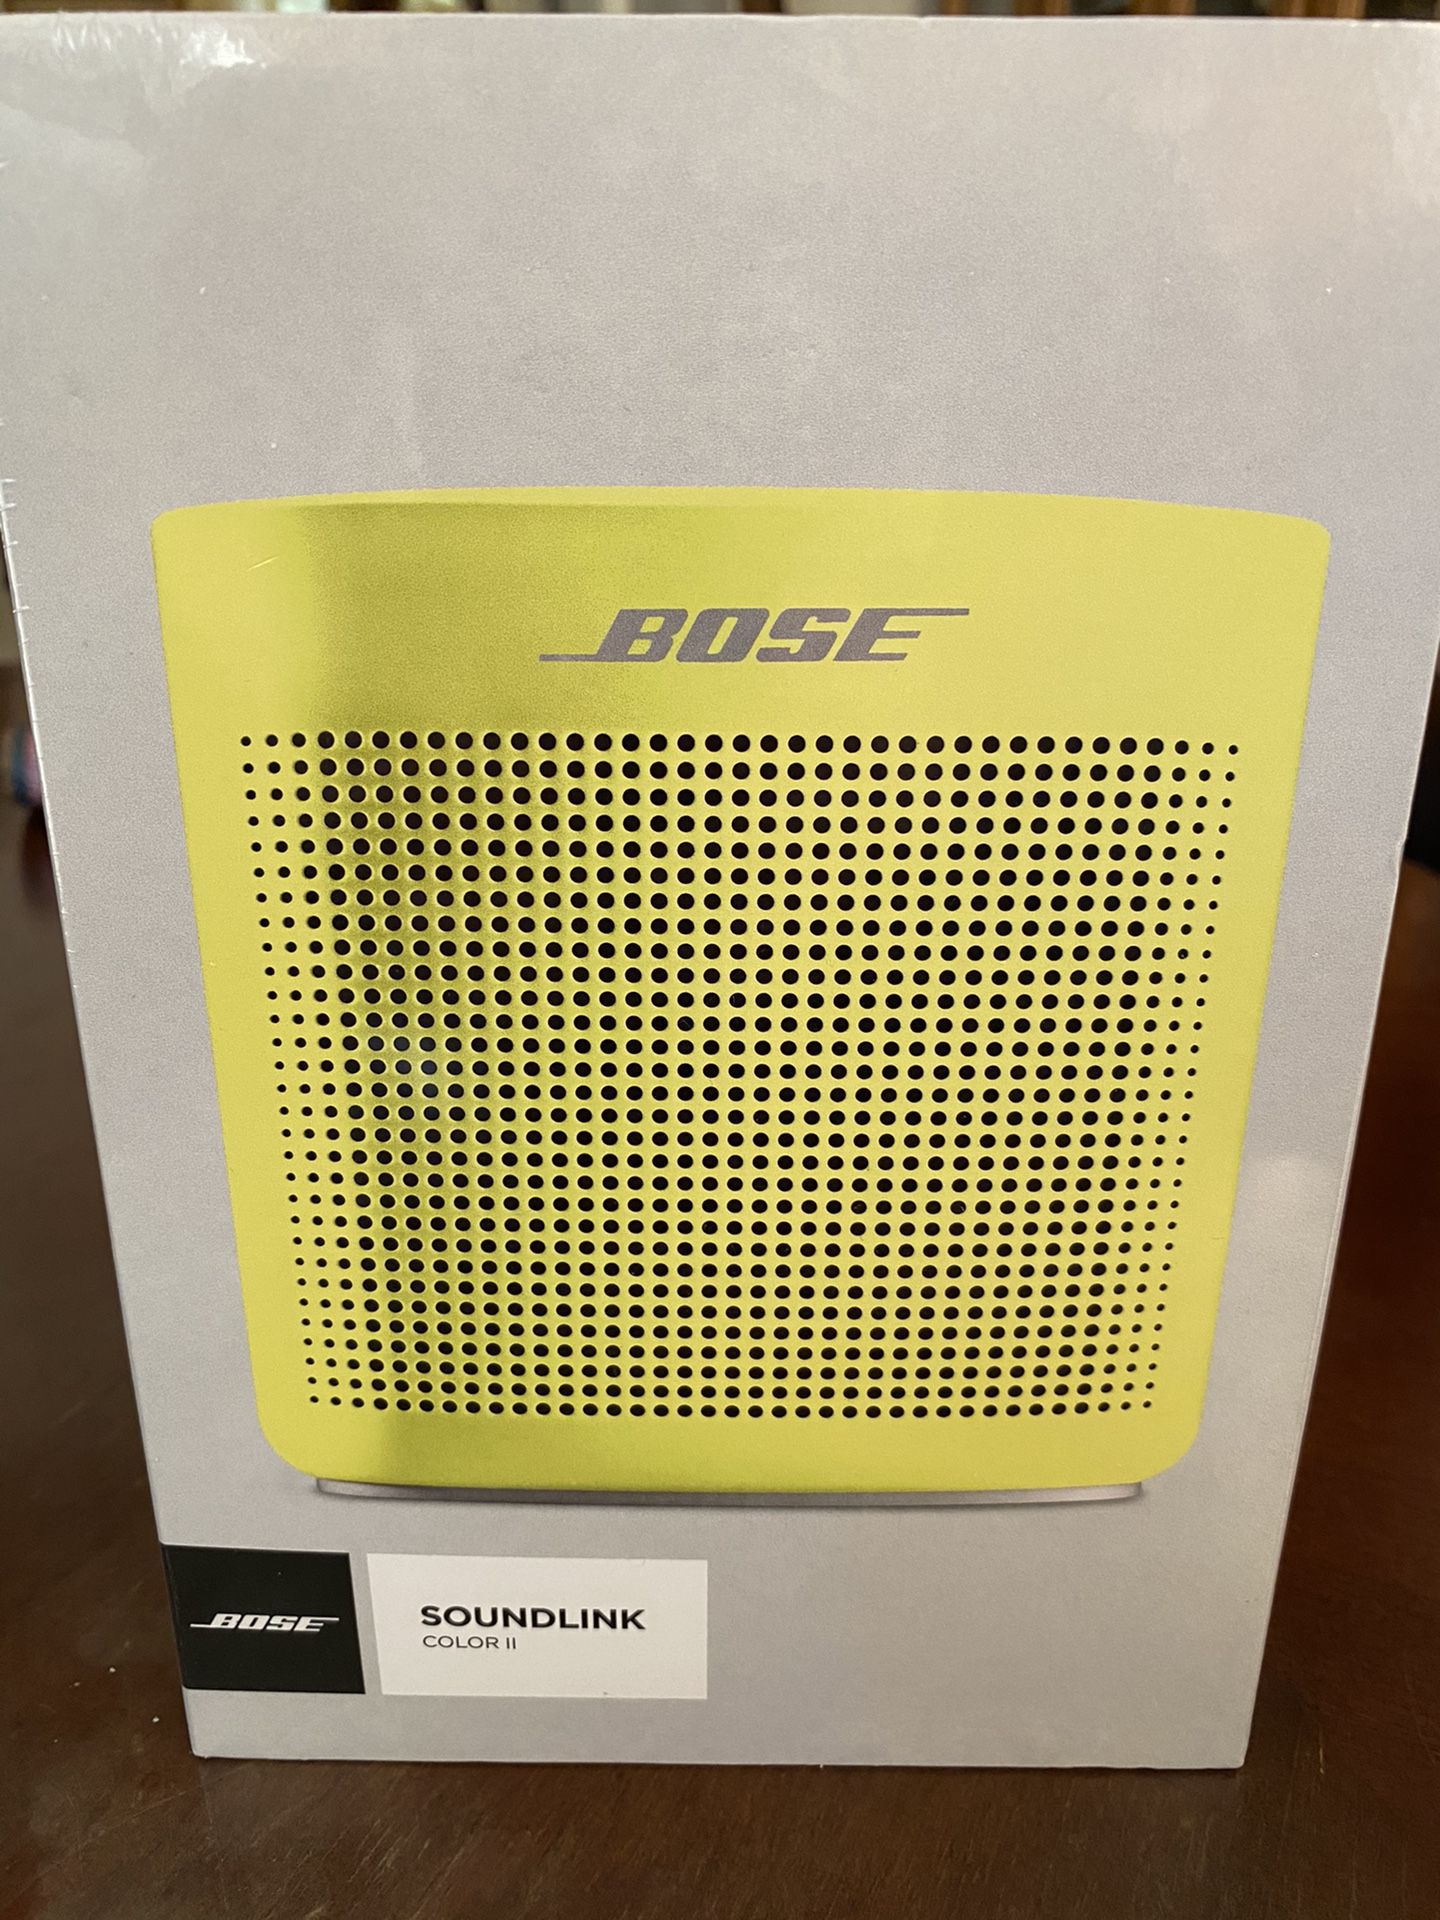 Bose soundlink color 2 speaker